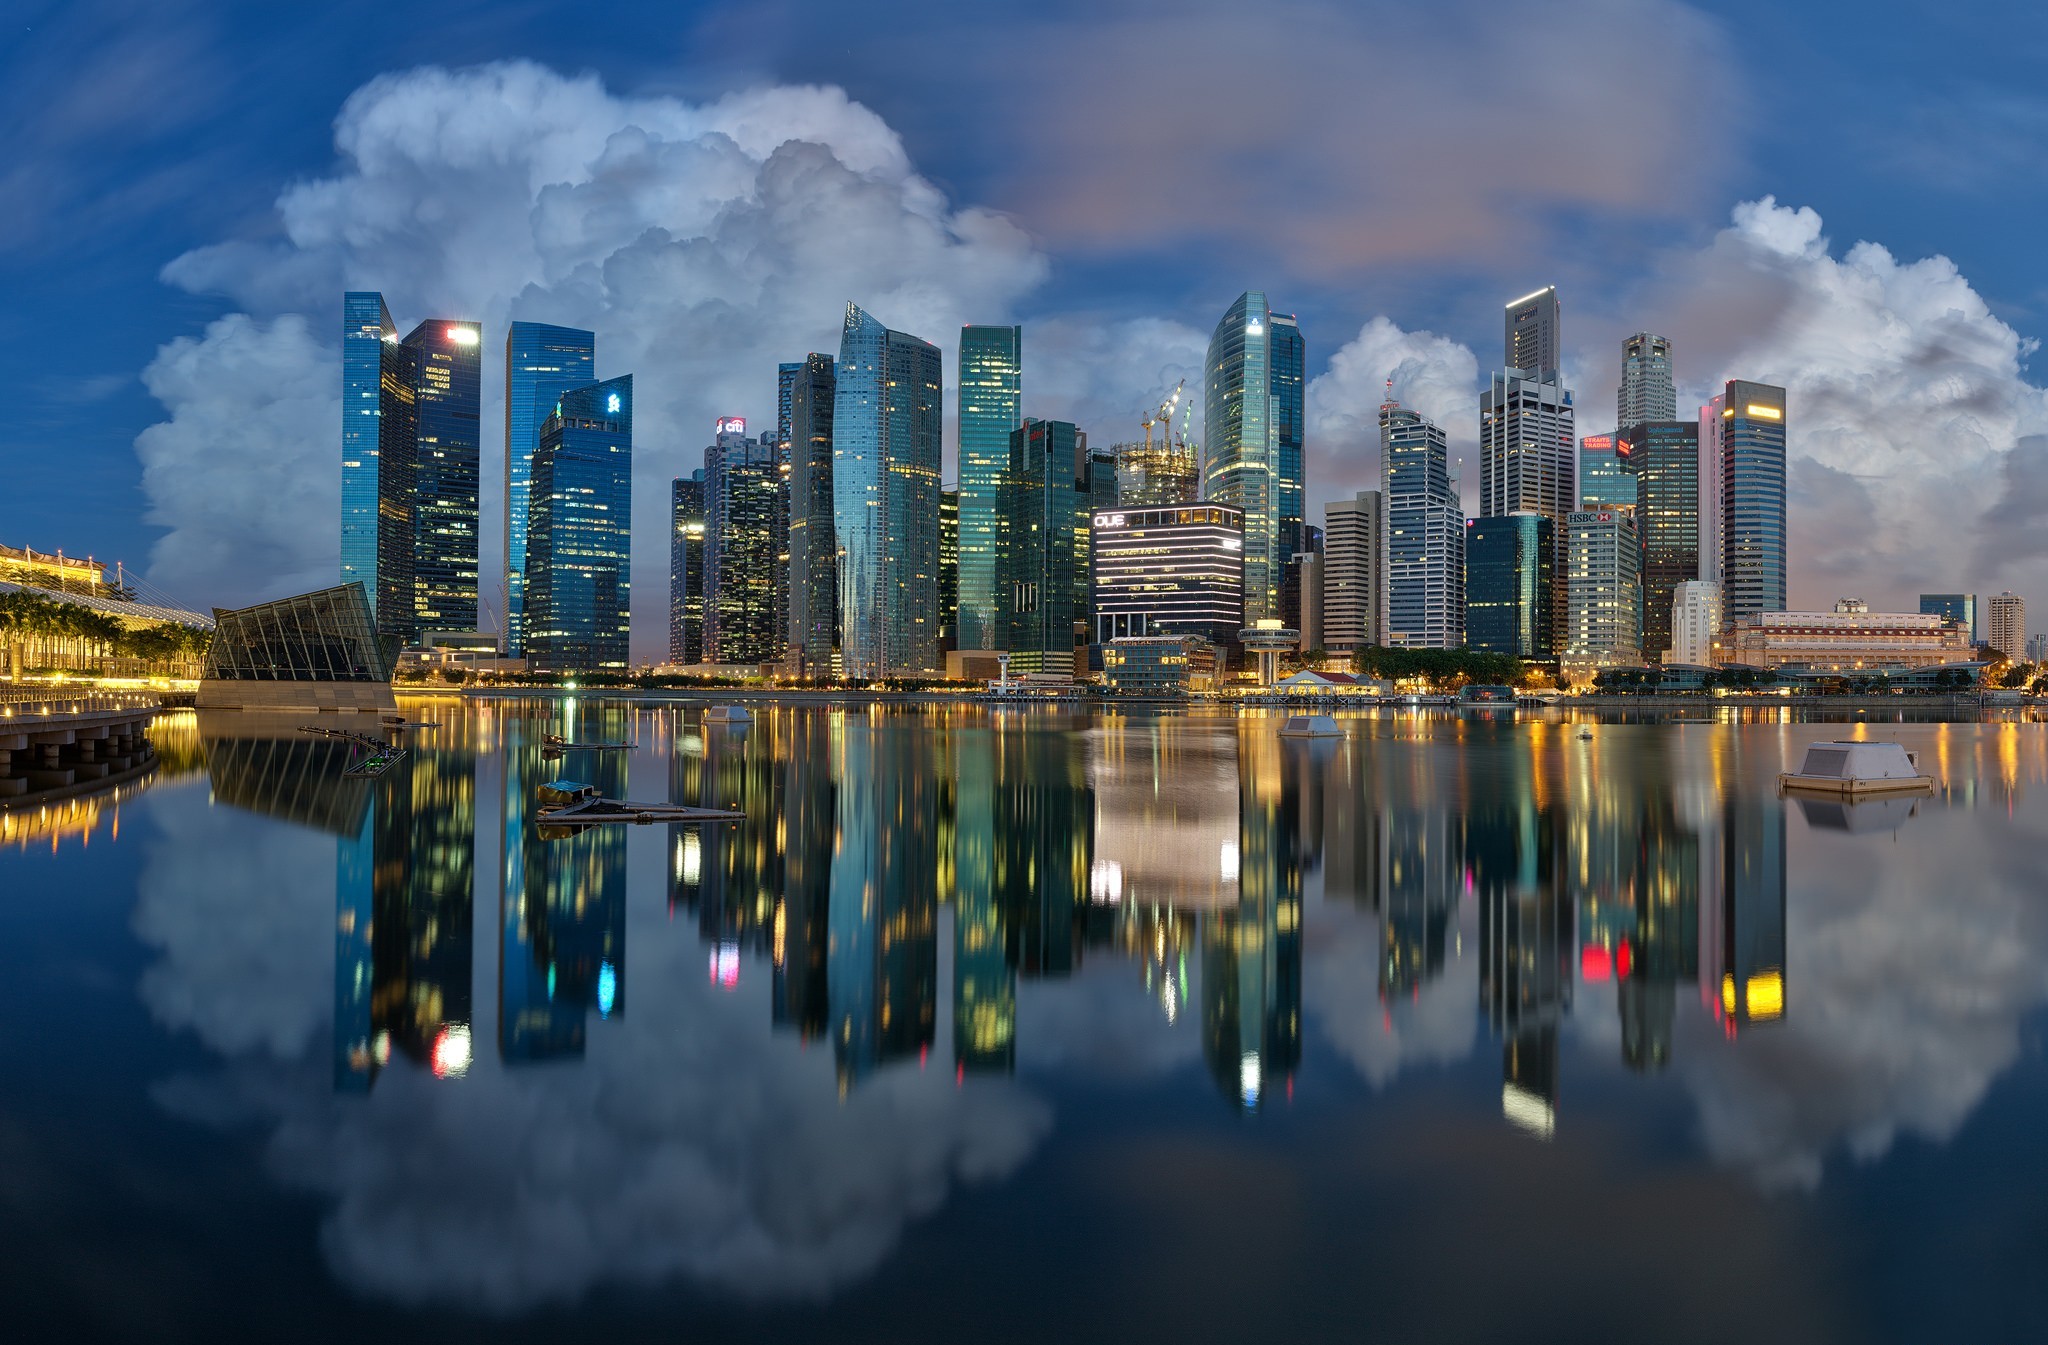 immagini di singapore sfondi,paesaggio urbano,area metropolitana,città,riflessione,orizzonte